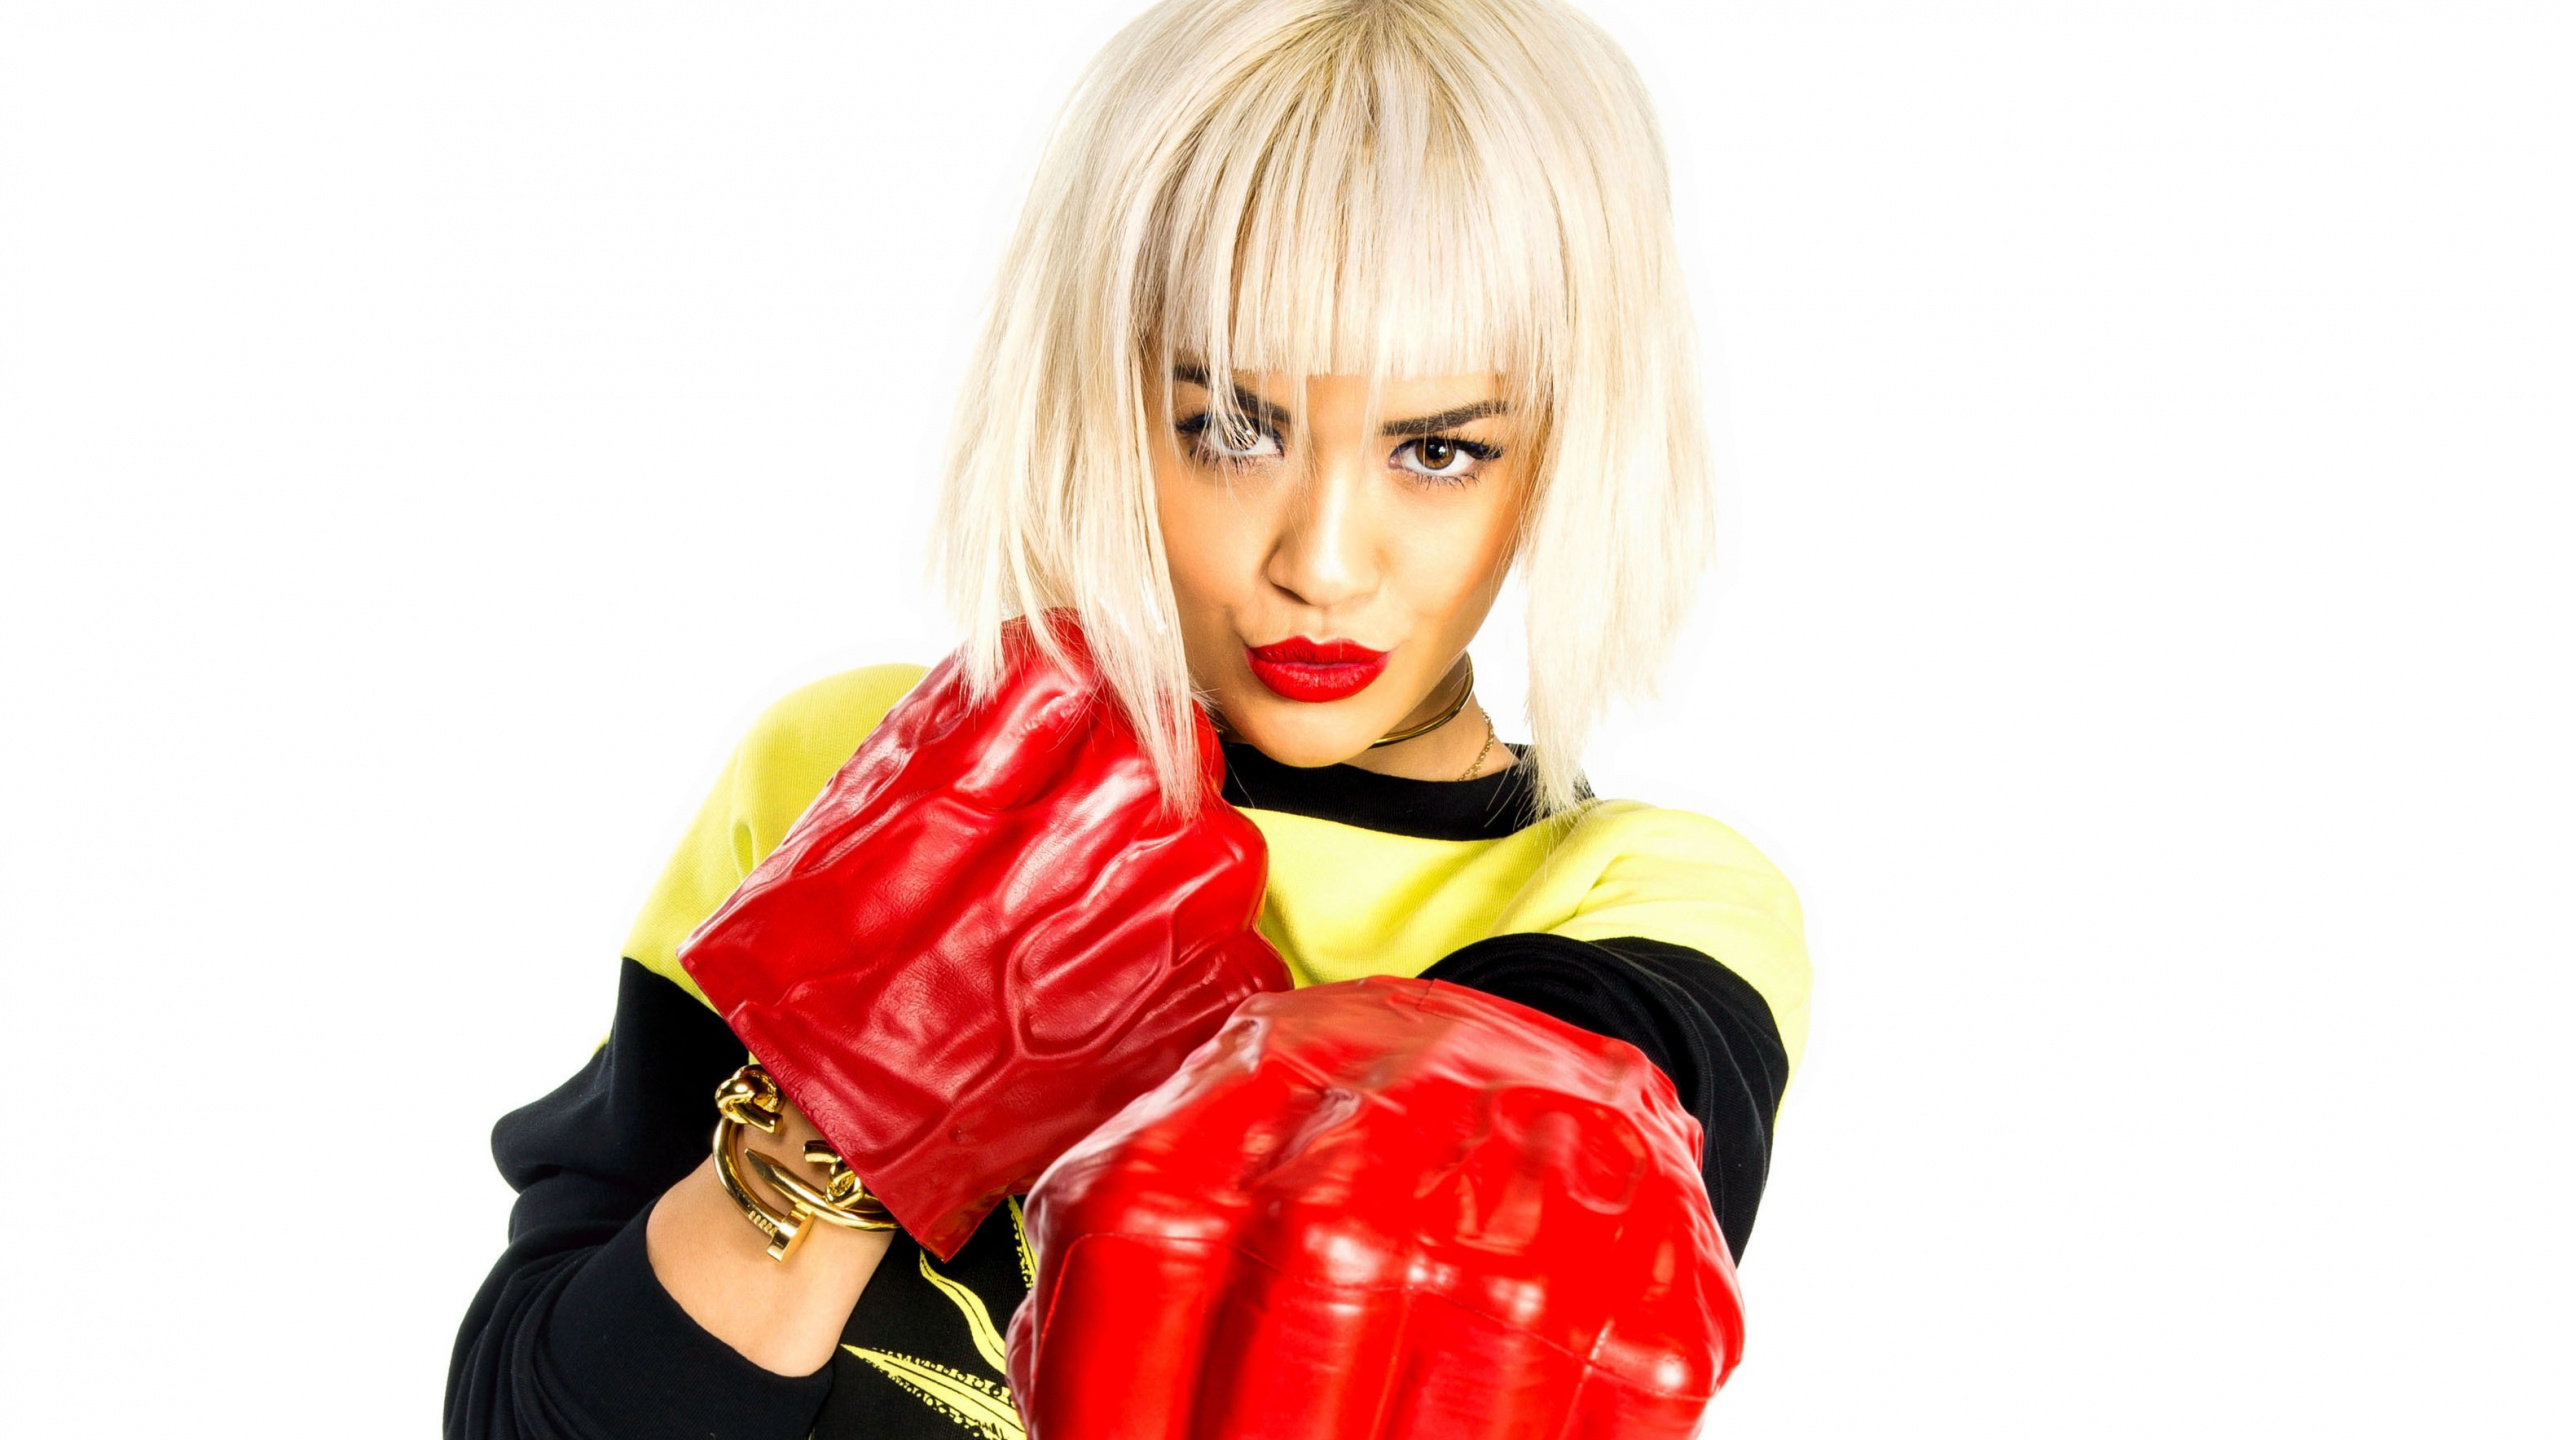 手套, Rita Ora, 拳击手套, 红色的, 拳击设备 壁纸 2560x1440 允许